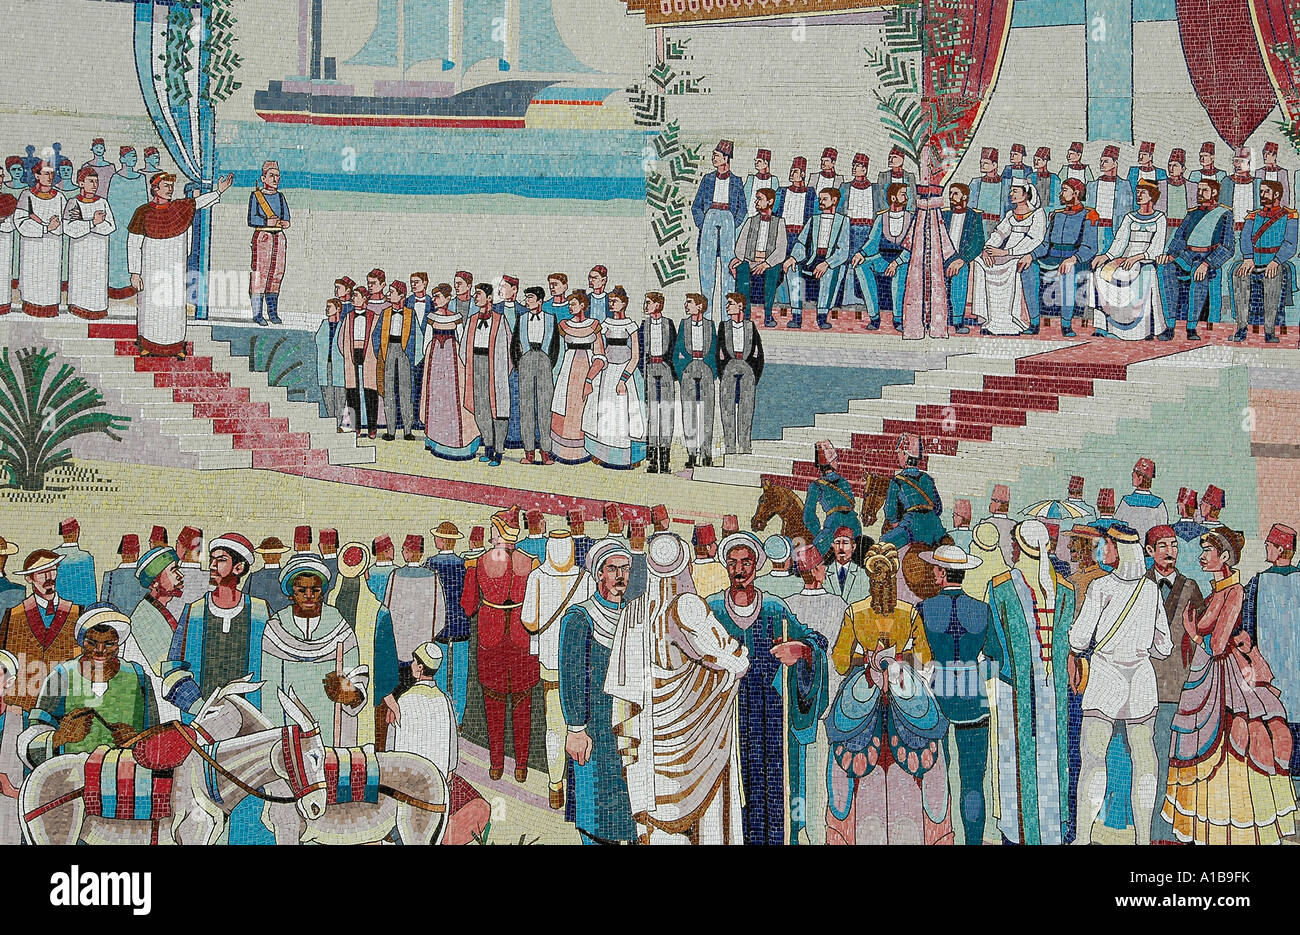 Mosaikfliesen Panel in der Stadt von Ismailia Darstellung der historischen Suezkanal Eröffnung am 17. November 1869, Ägypten Stockfoto